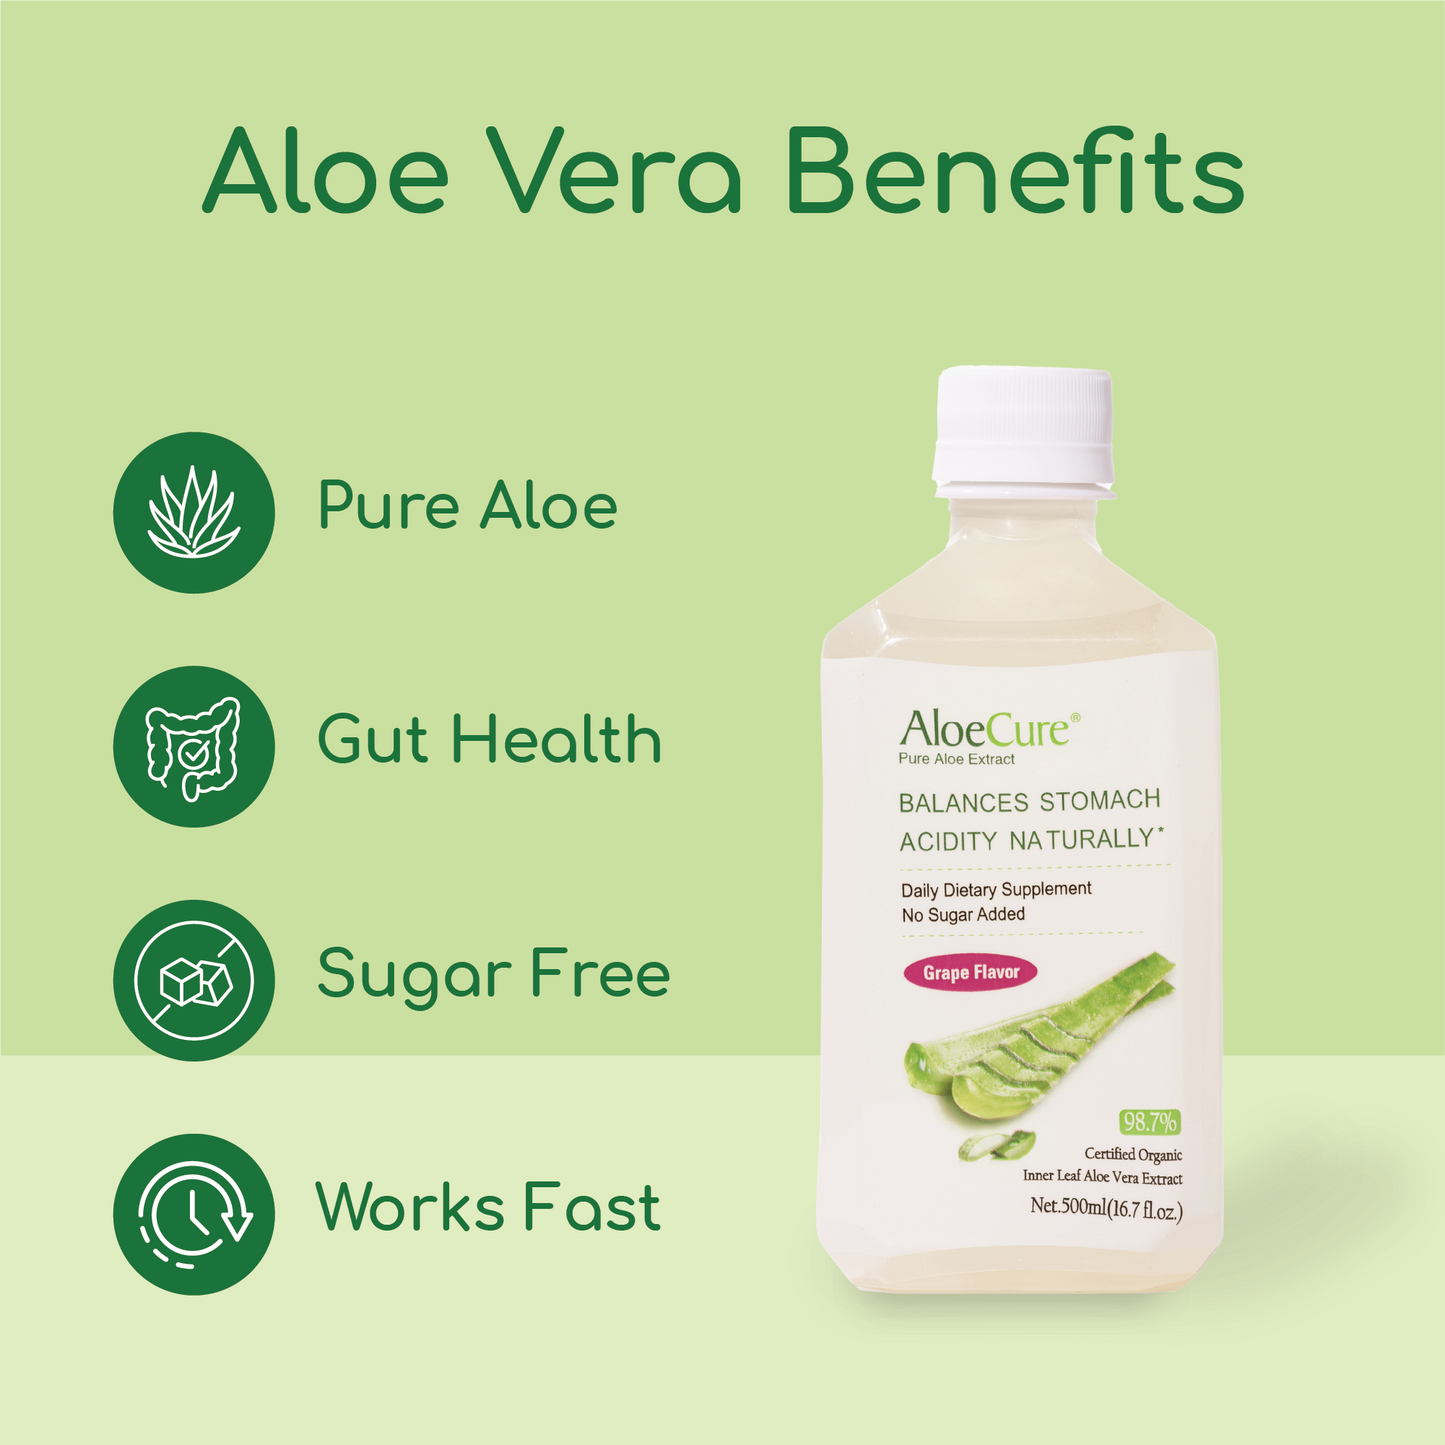 Pure Aloe Vera Juice Grape Flavor by AloeCure